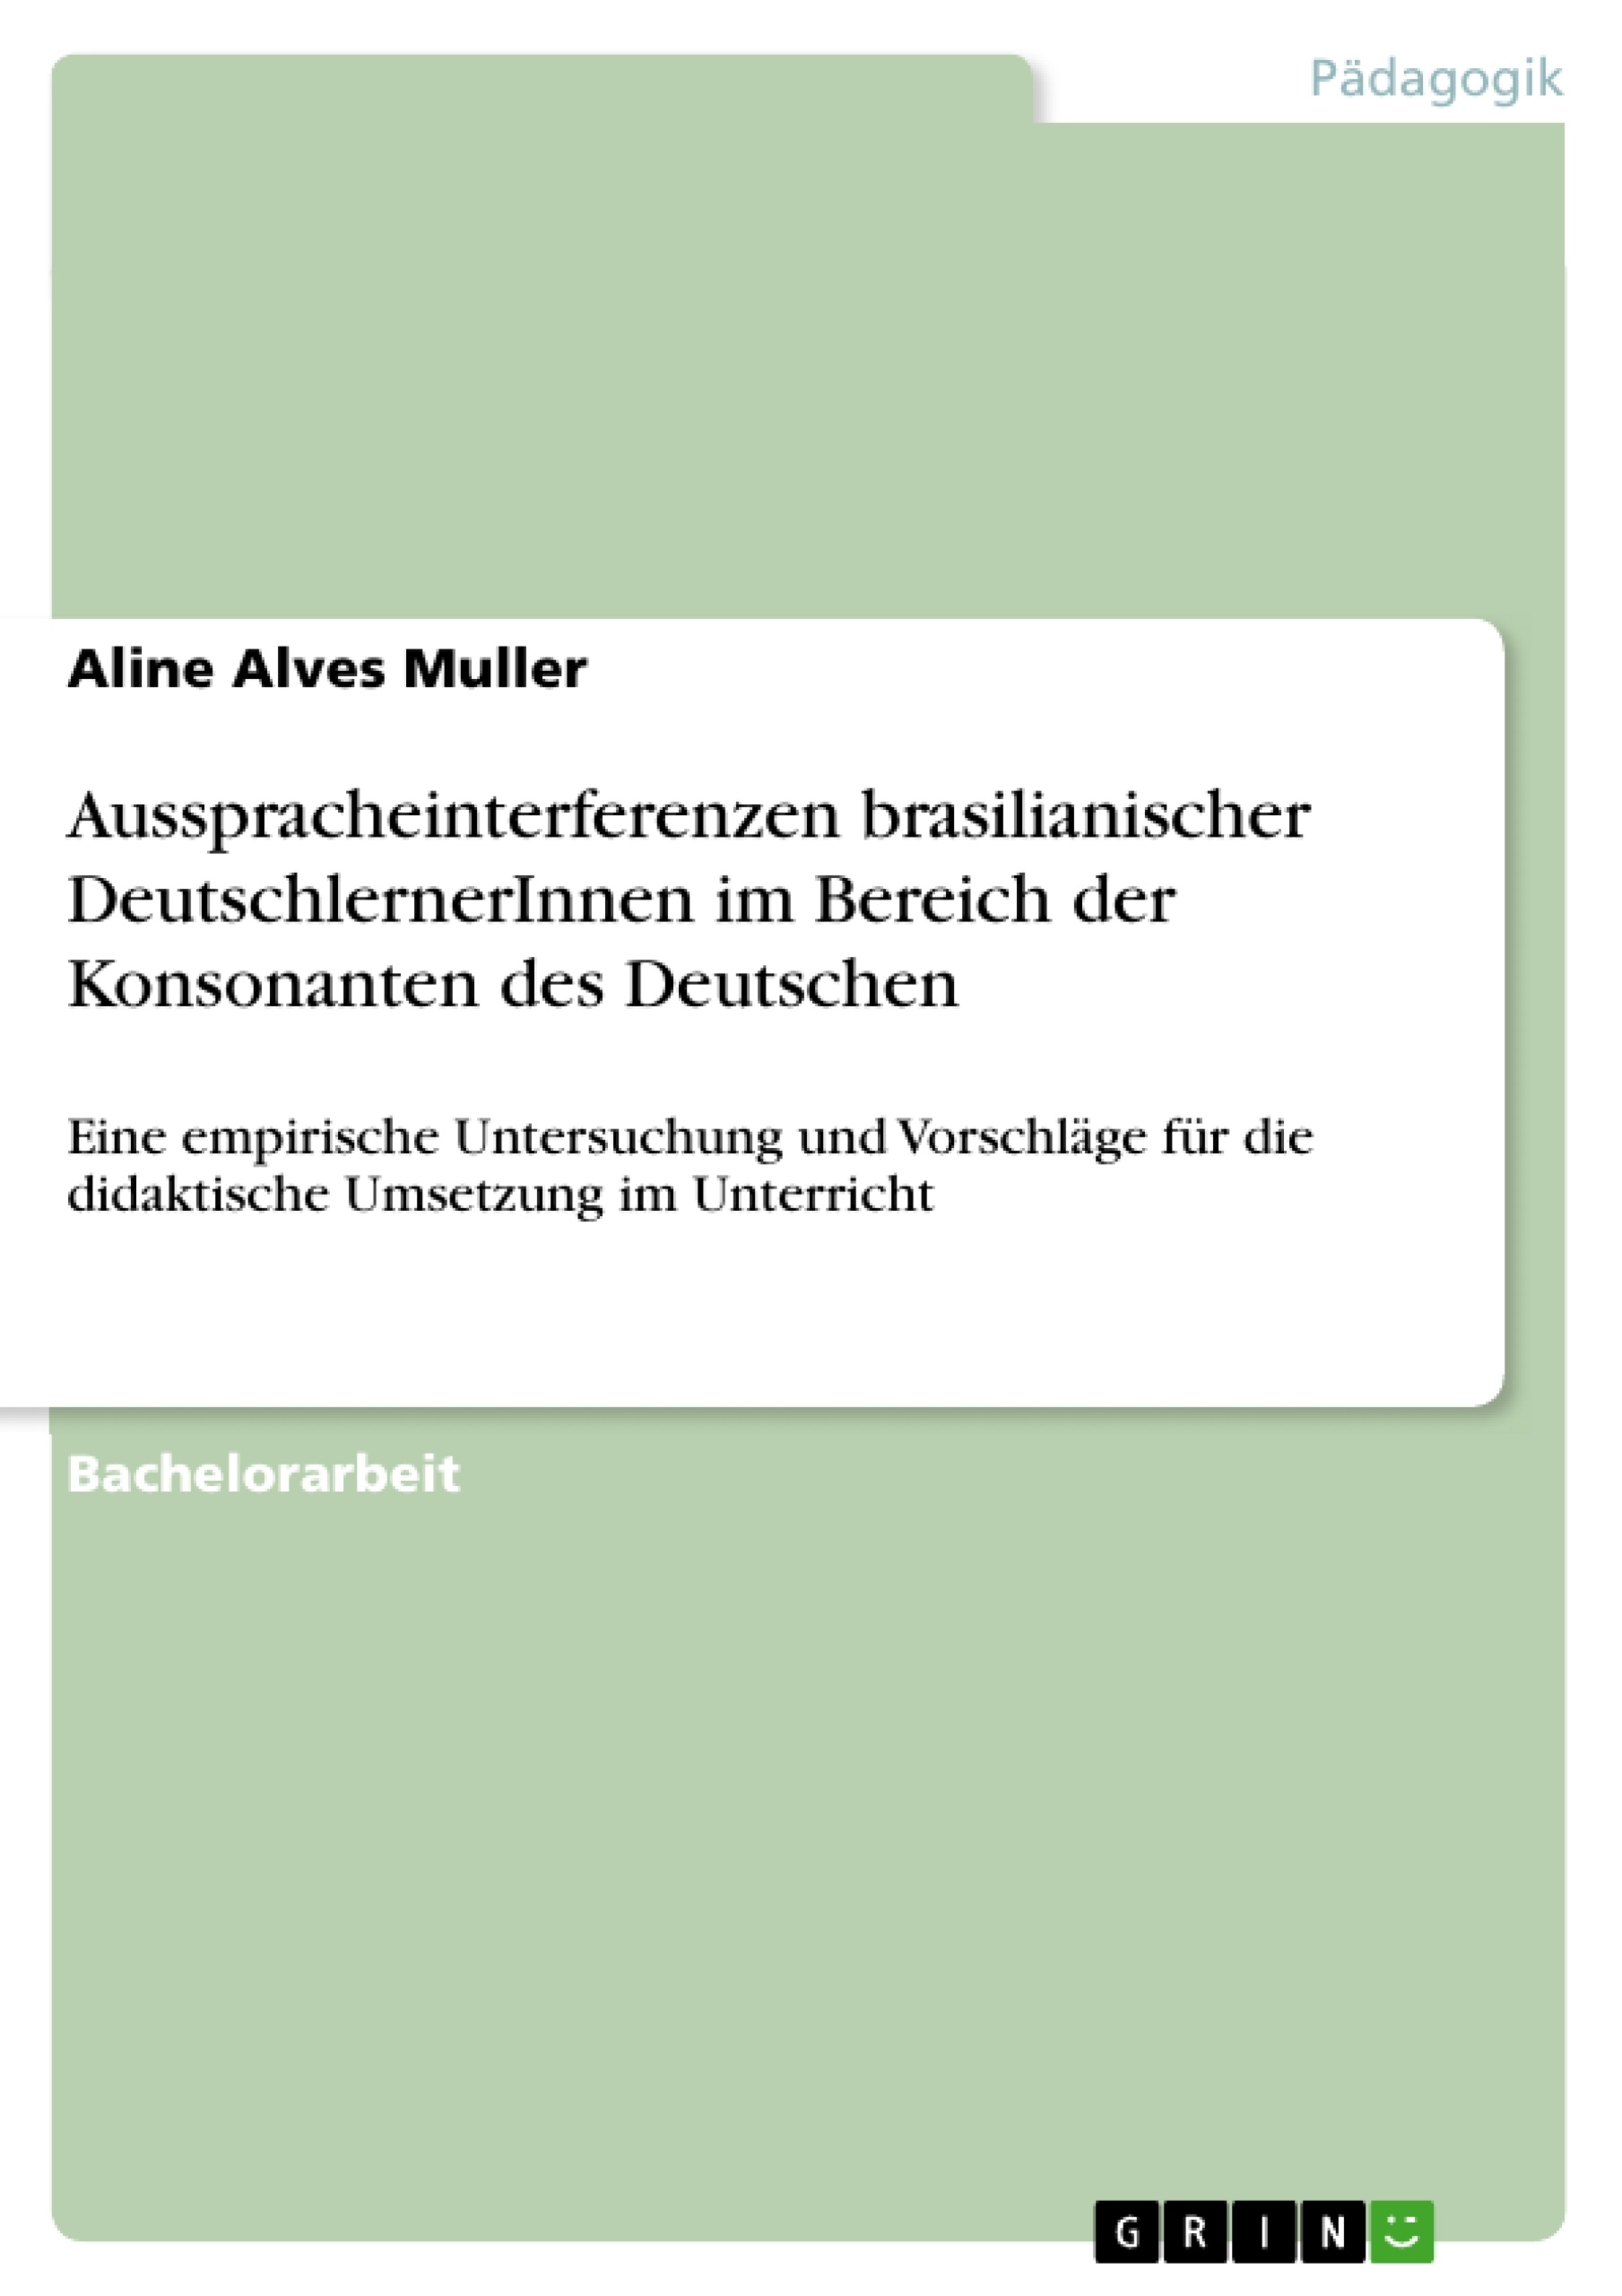 Title: Ausspracheinterferenzen brasilianischer DeutschlernerInnen im Bereich der Konsonanten des Deutschen